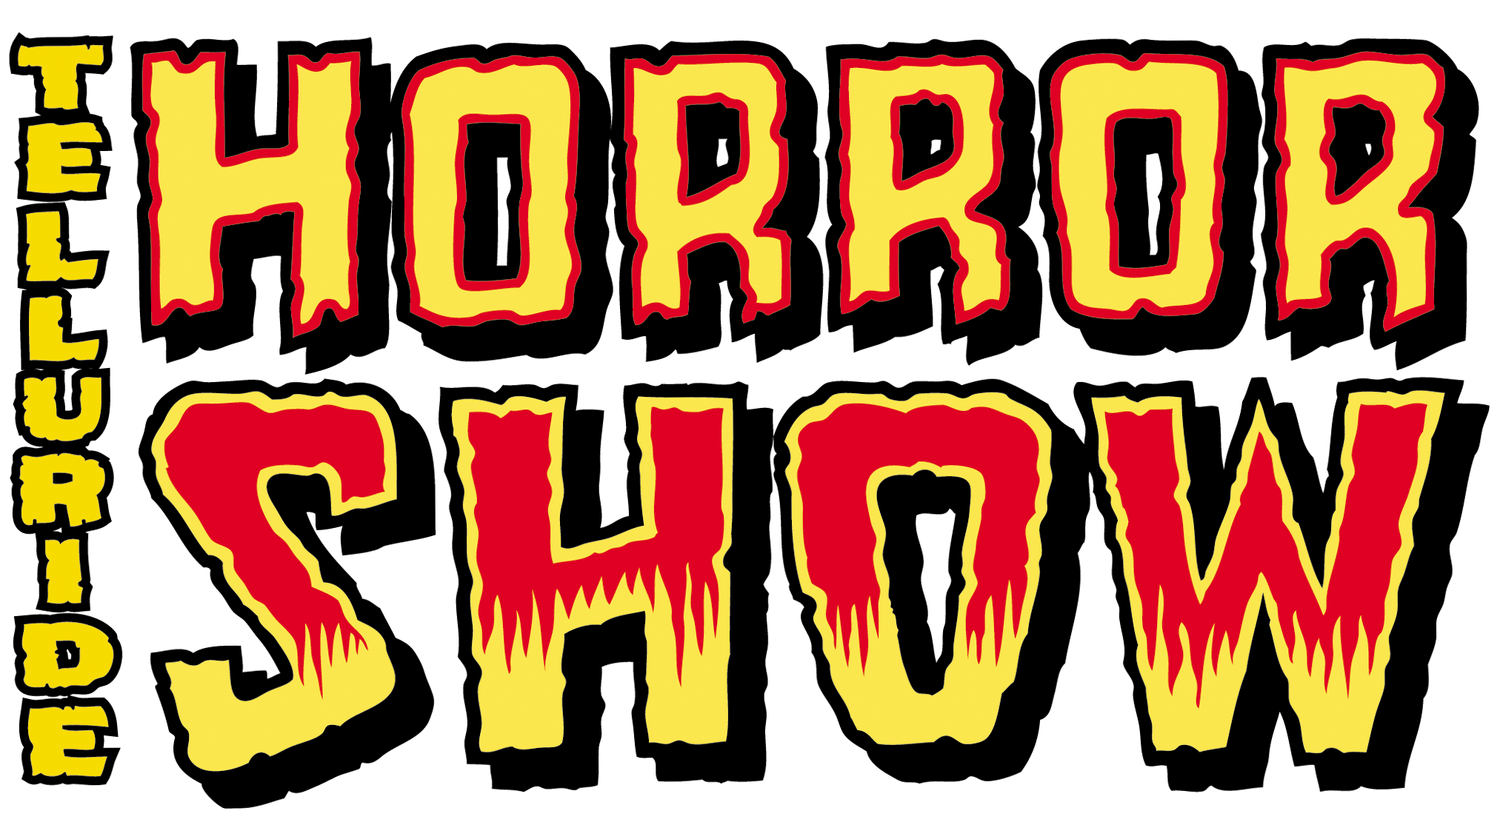 Telluride Horror Show